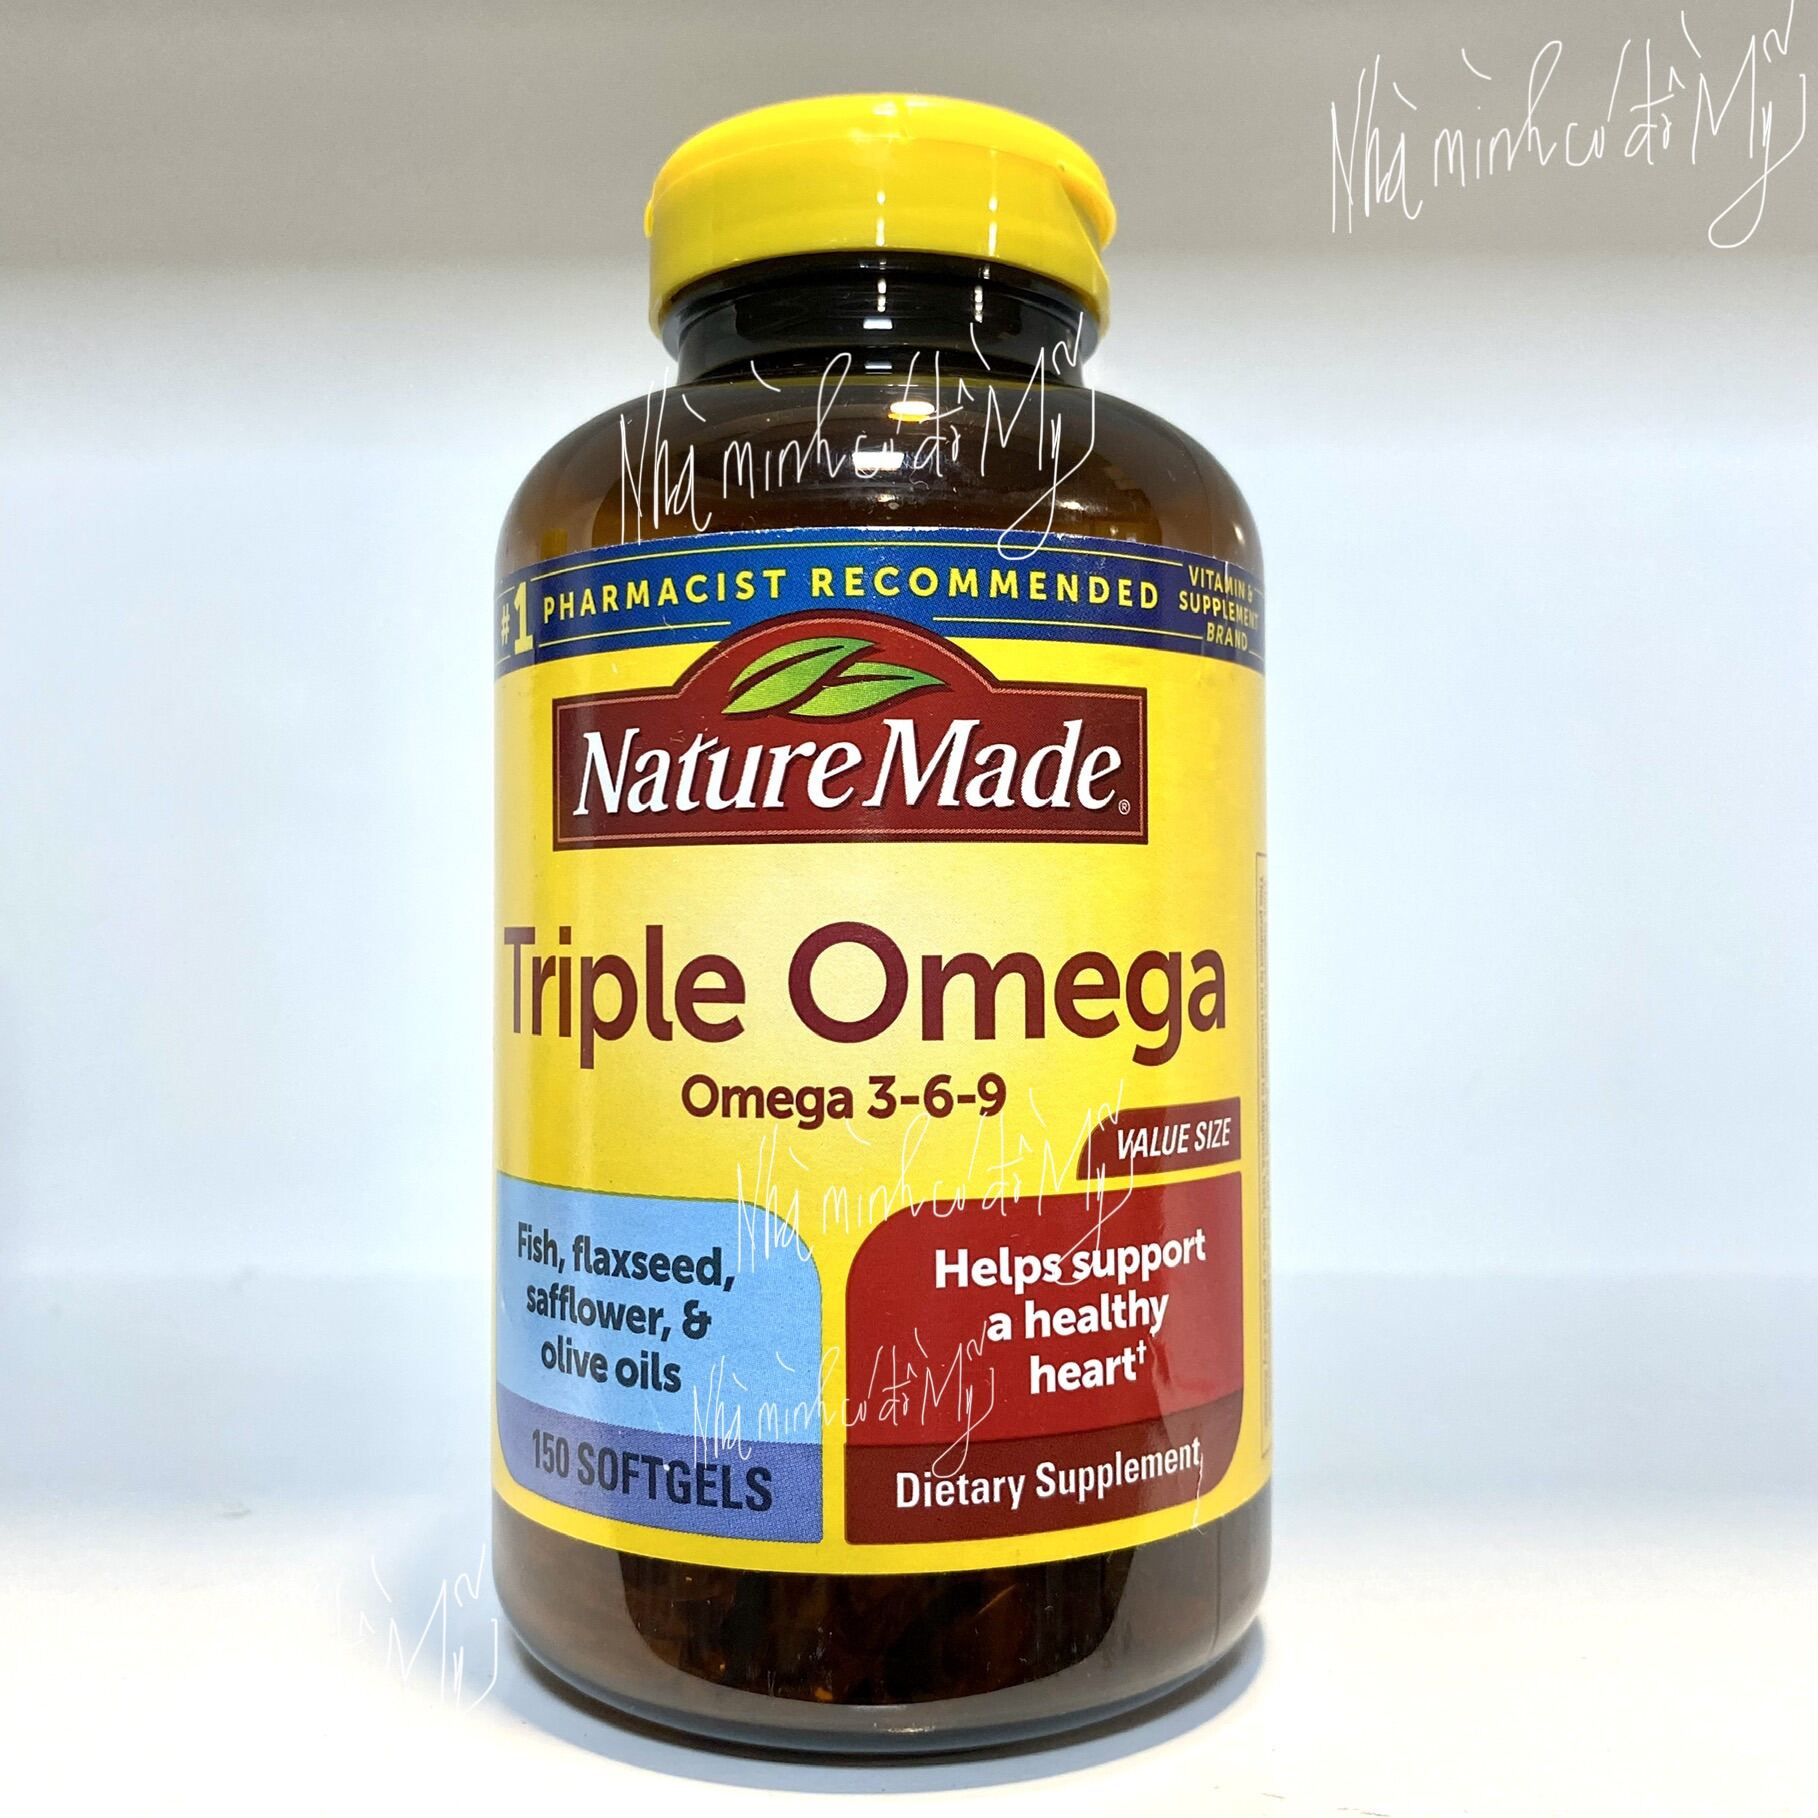 Viên uống Triple Omega 369 Nature Made 150 softgels của Mỹ tốt cho tim mạch